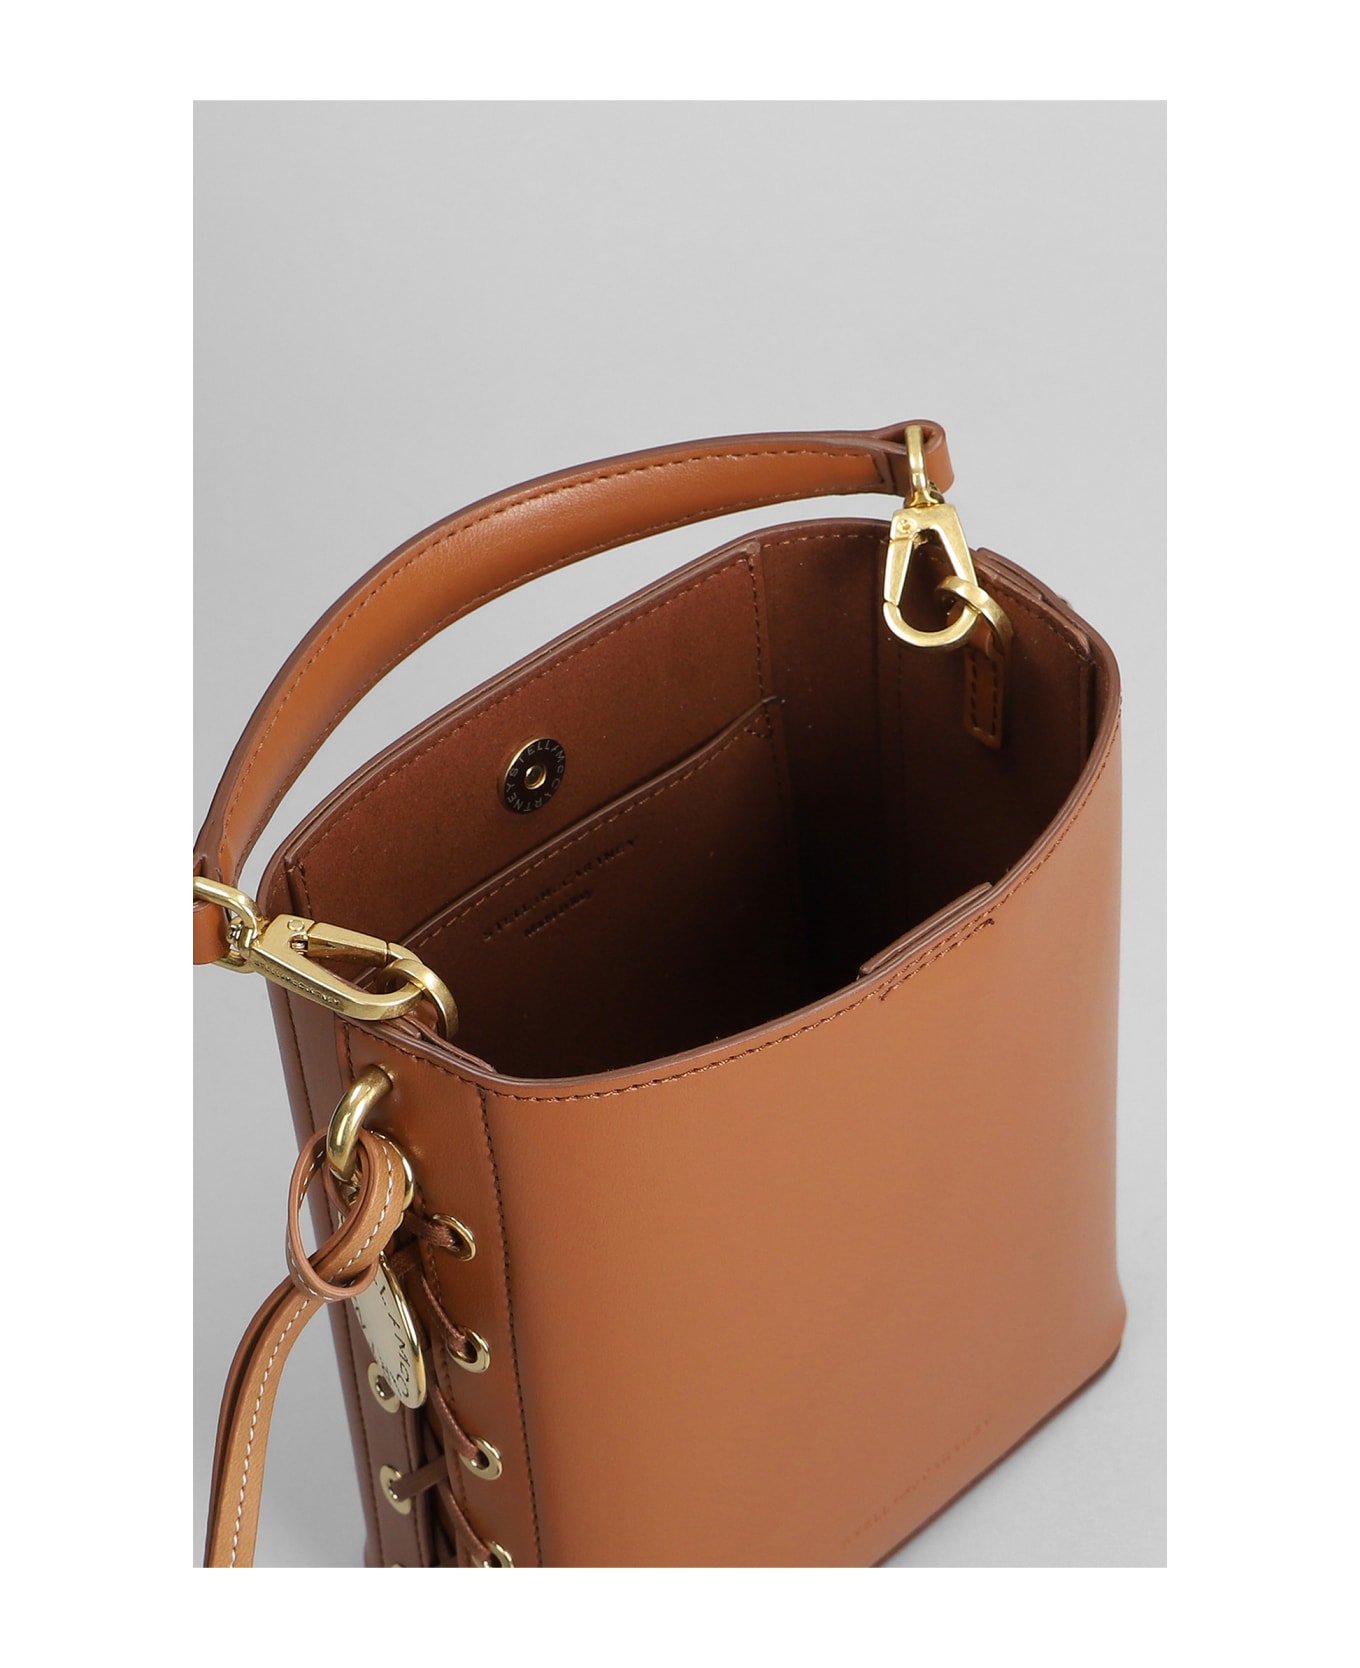 Stella McCartney Shoulder Bag In Leather Color Polyamide - leather color トートバッグ